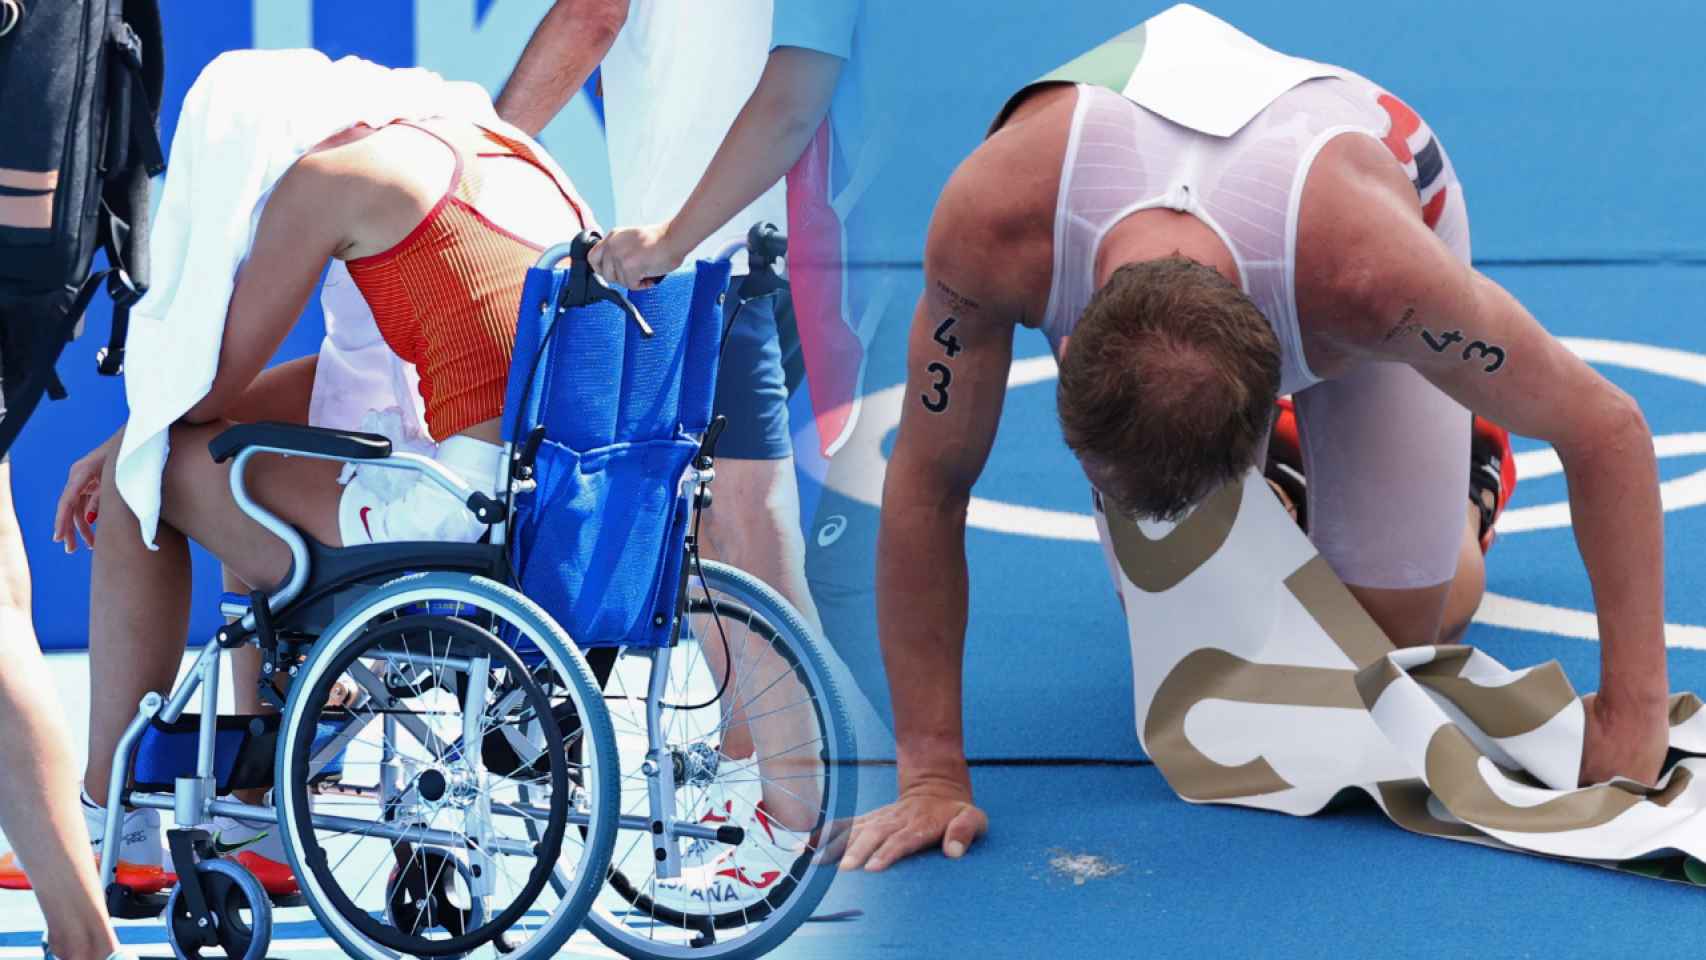 Paula Badosa, en silla de ruedas, y Kristian Blummenfelt, vomitando, en un fotomontaje